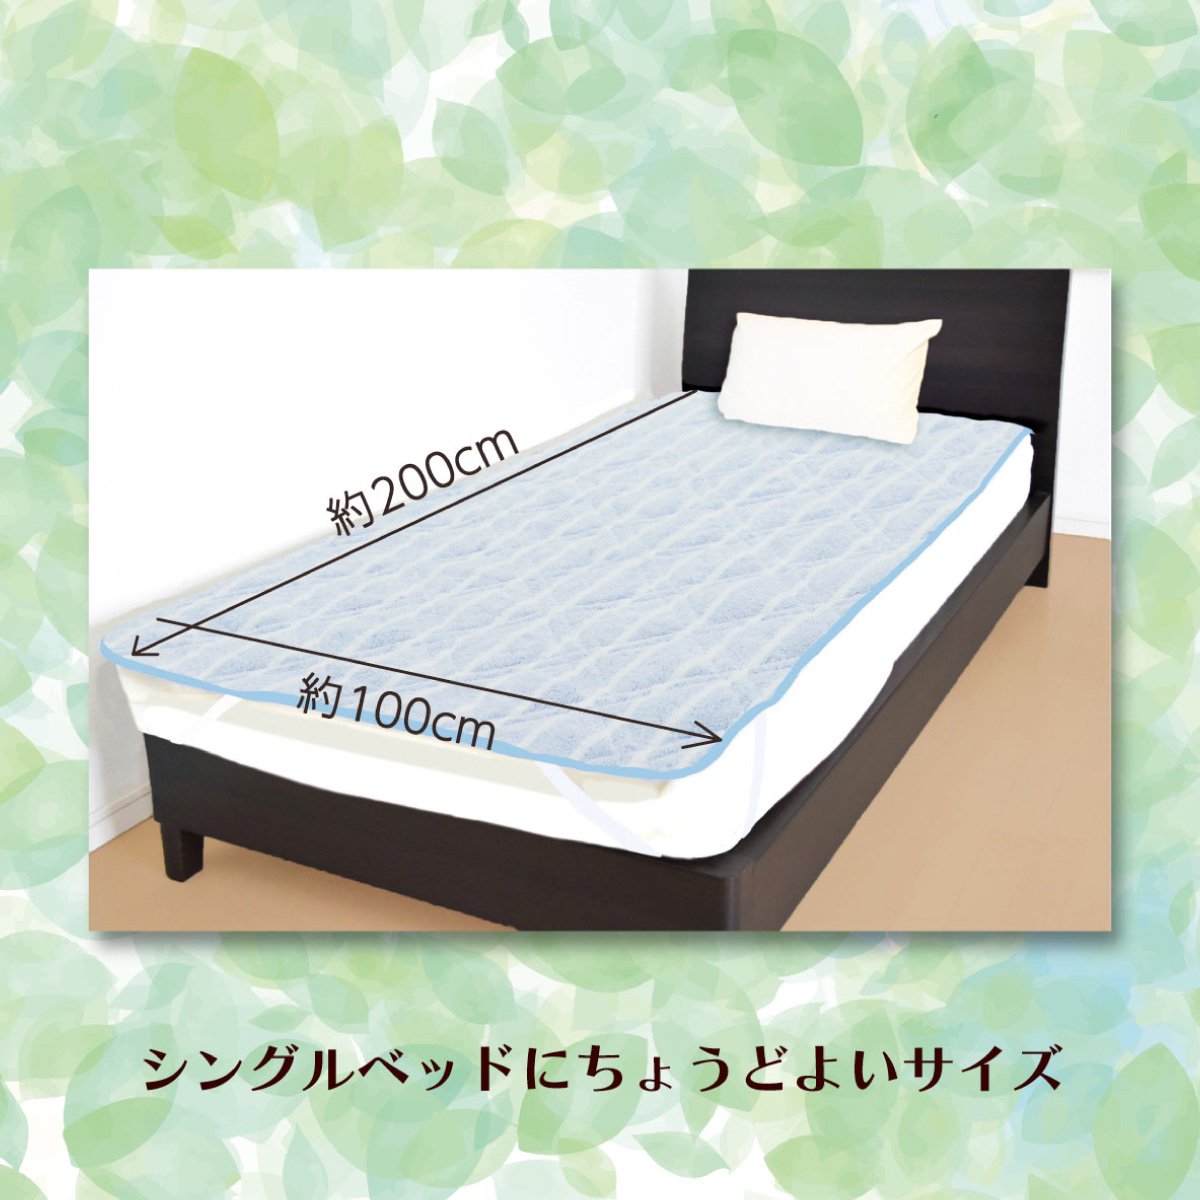 シンカーパイル敷パッドはシングルベッドにちょうどよいサイズであることを明記したバナー画像